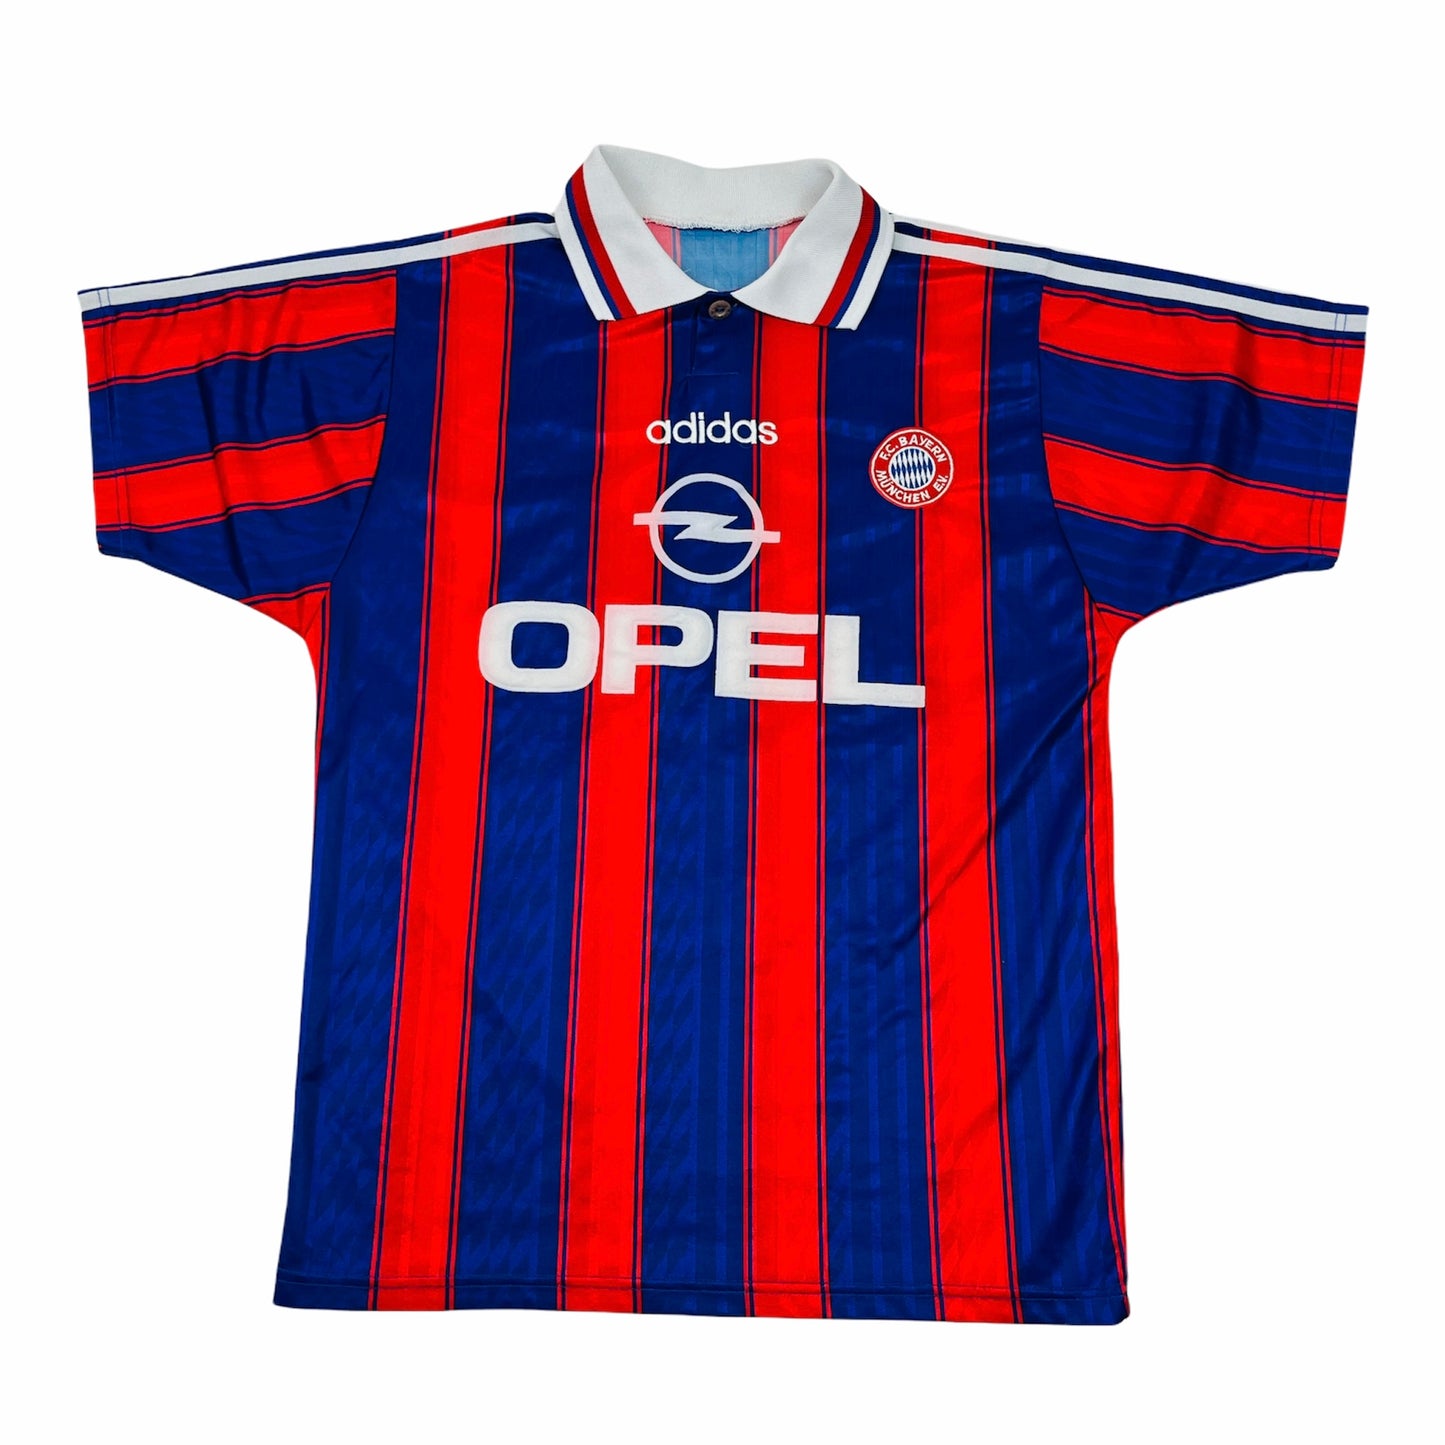 0730 Adidas Vintage FC Bayern München Klinsmann 95-97 Home Jersey